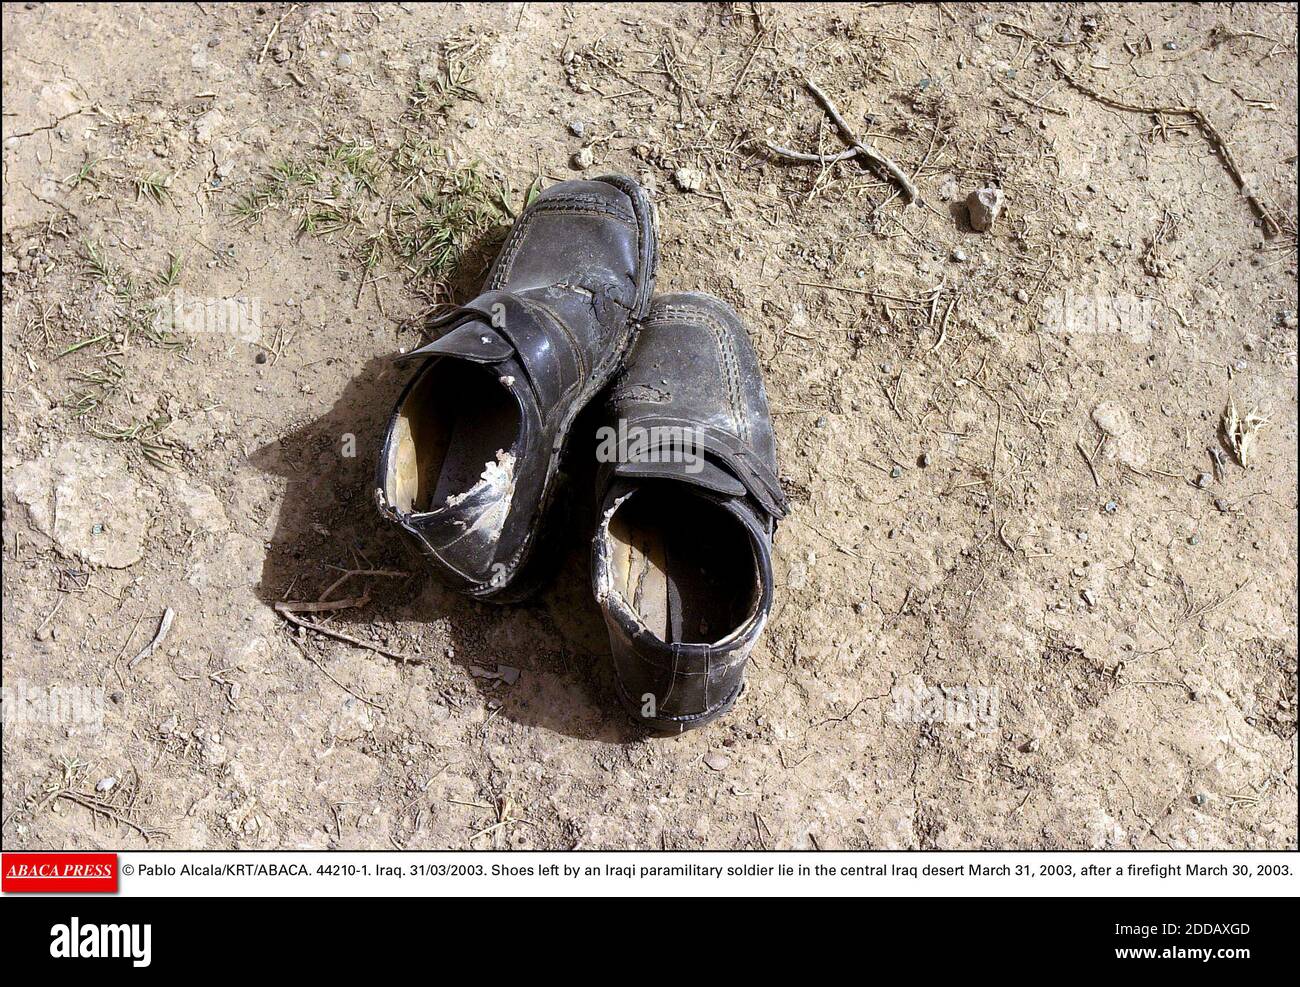 KEIN FILM, KEIN VIDEO, KEIN FERNSEHEN, KEIN DOKUMENTARFILM - © PABLO ALCALA/KRT/ABACA. 44210-1. Irak. 31/03/2003. Schuhe, die ein irakischer paramilitärischer Soldat hinterlassen hat, liegen am 31. März 2003 in der zentralirakischen Wüste, nach einem Feuergefecht am 30. März 2003. Stockfoto